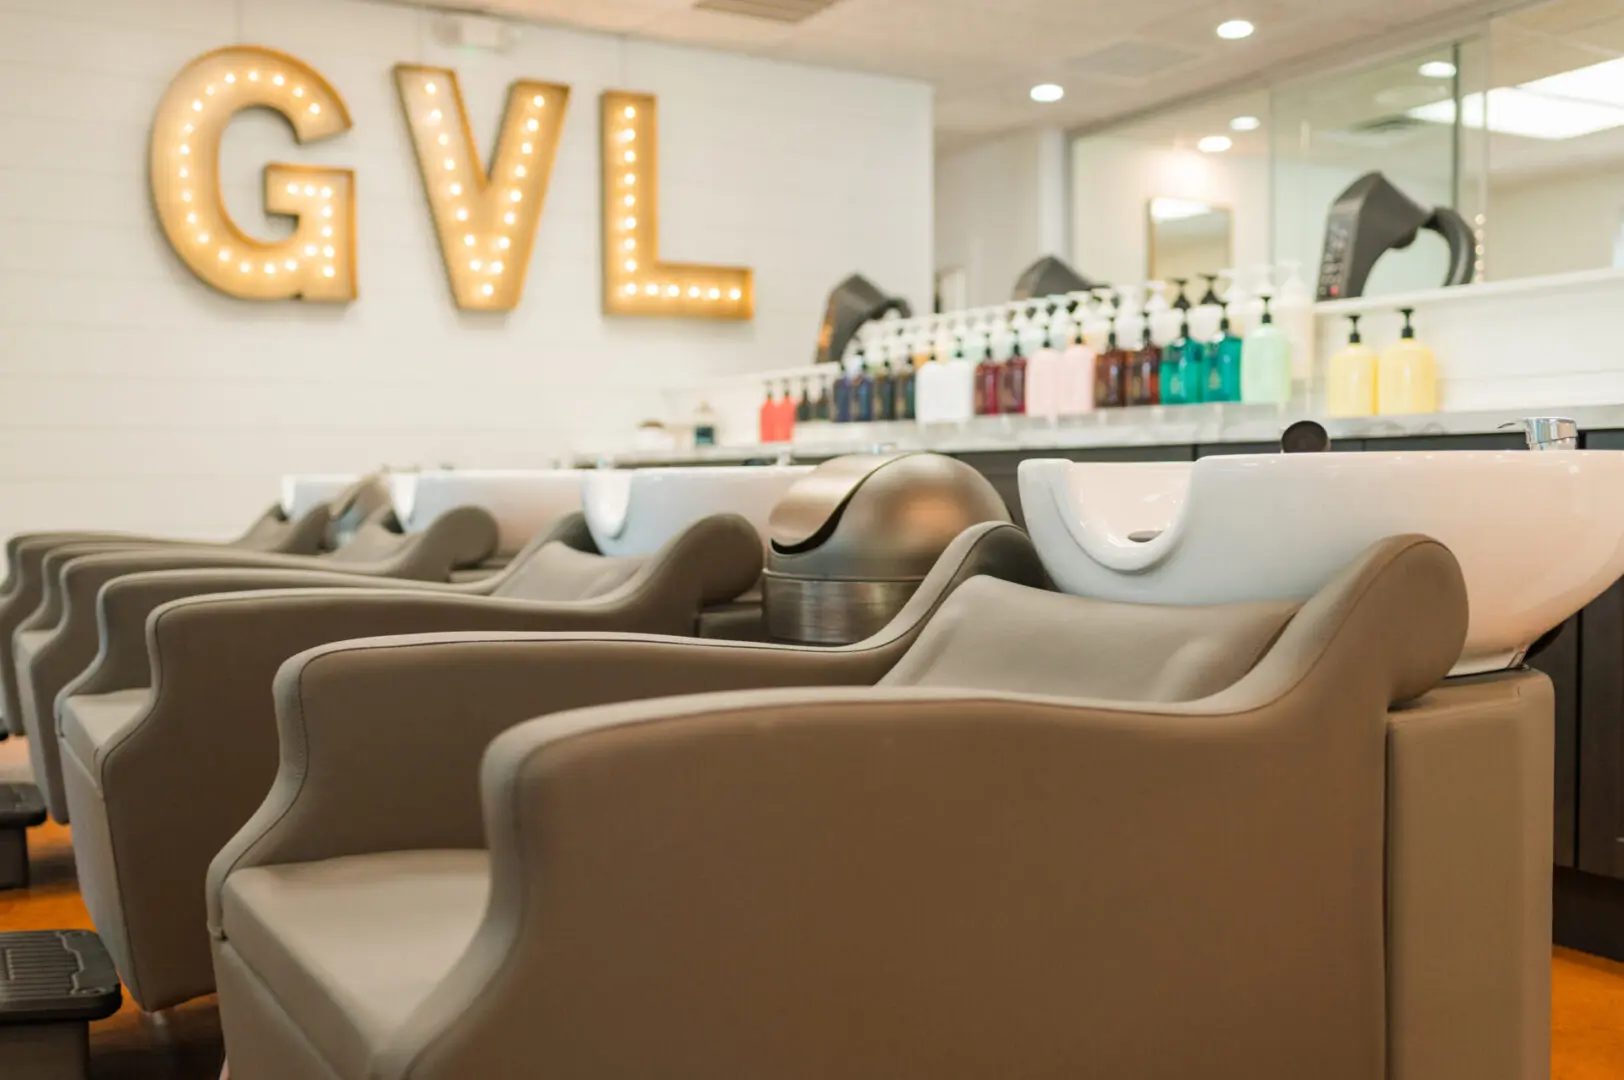 Hair Salon - The Greenville Hair Bar